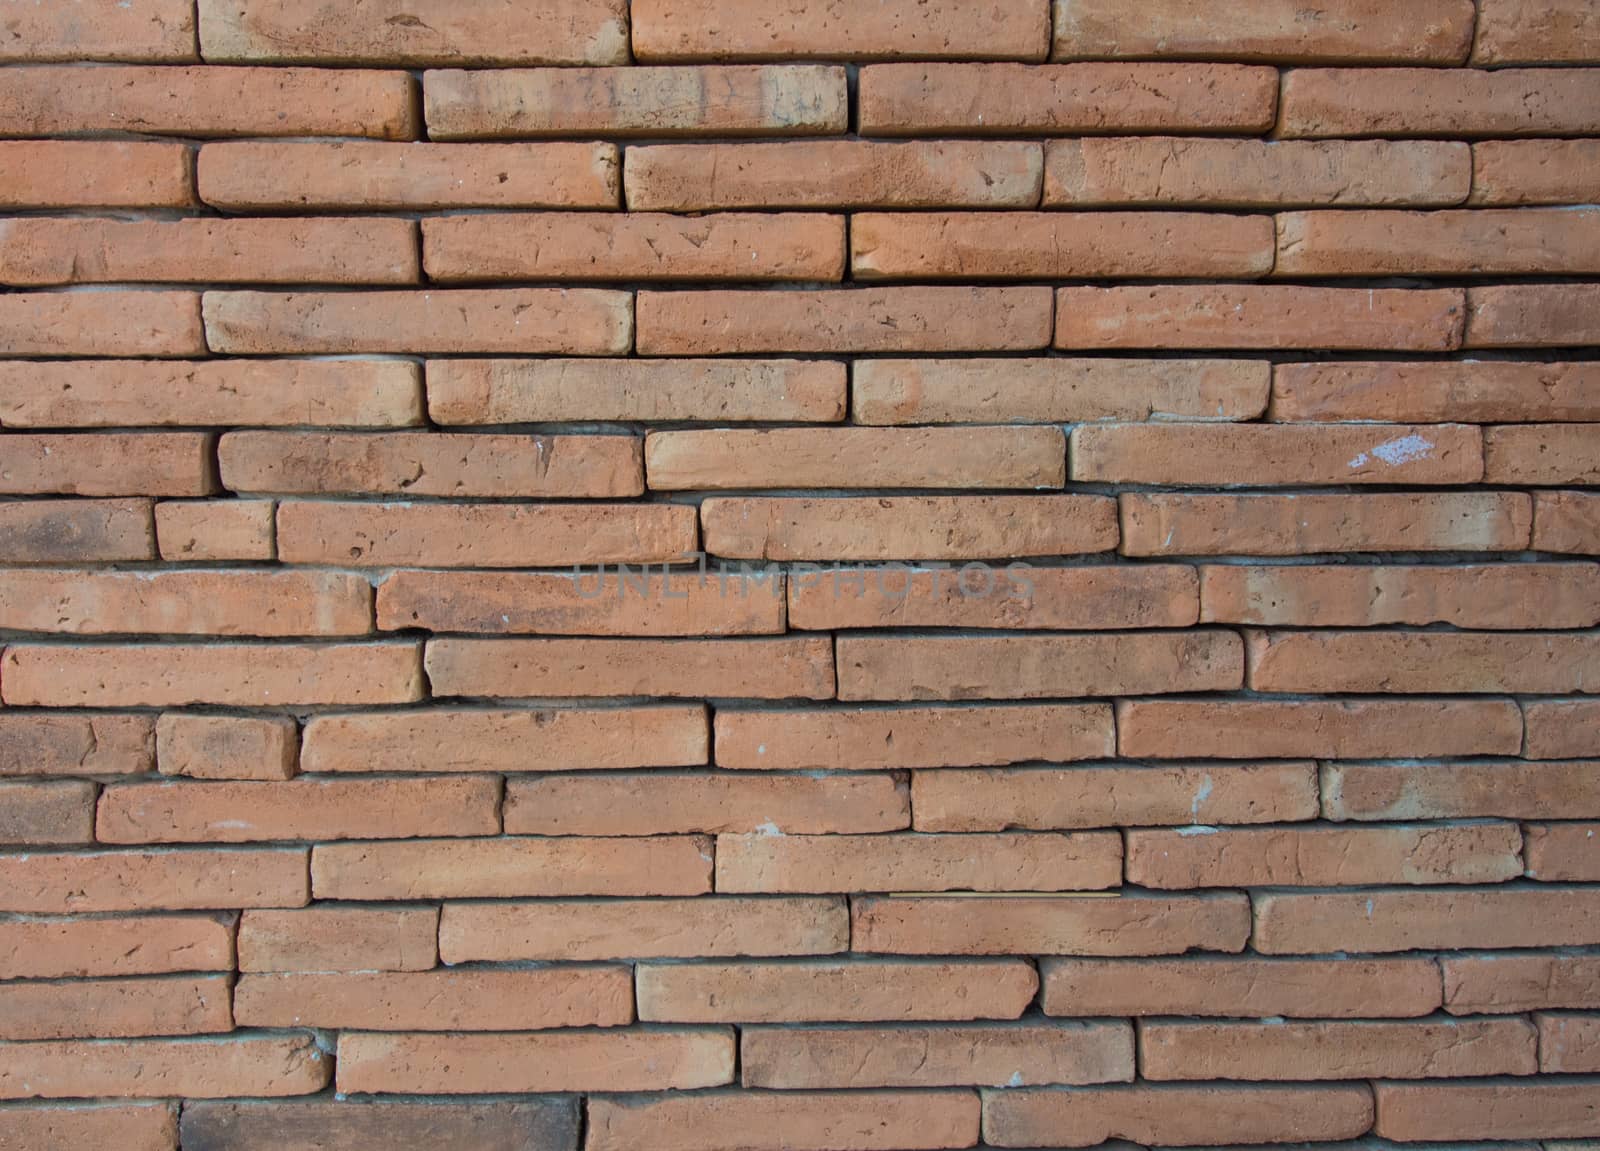 Brick wall by TodUdom